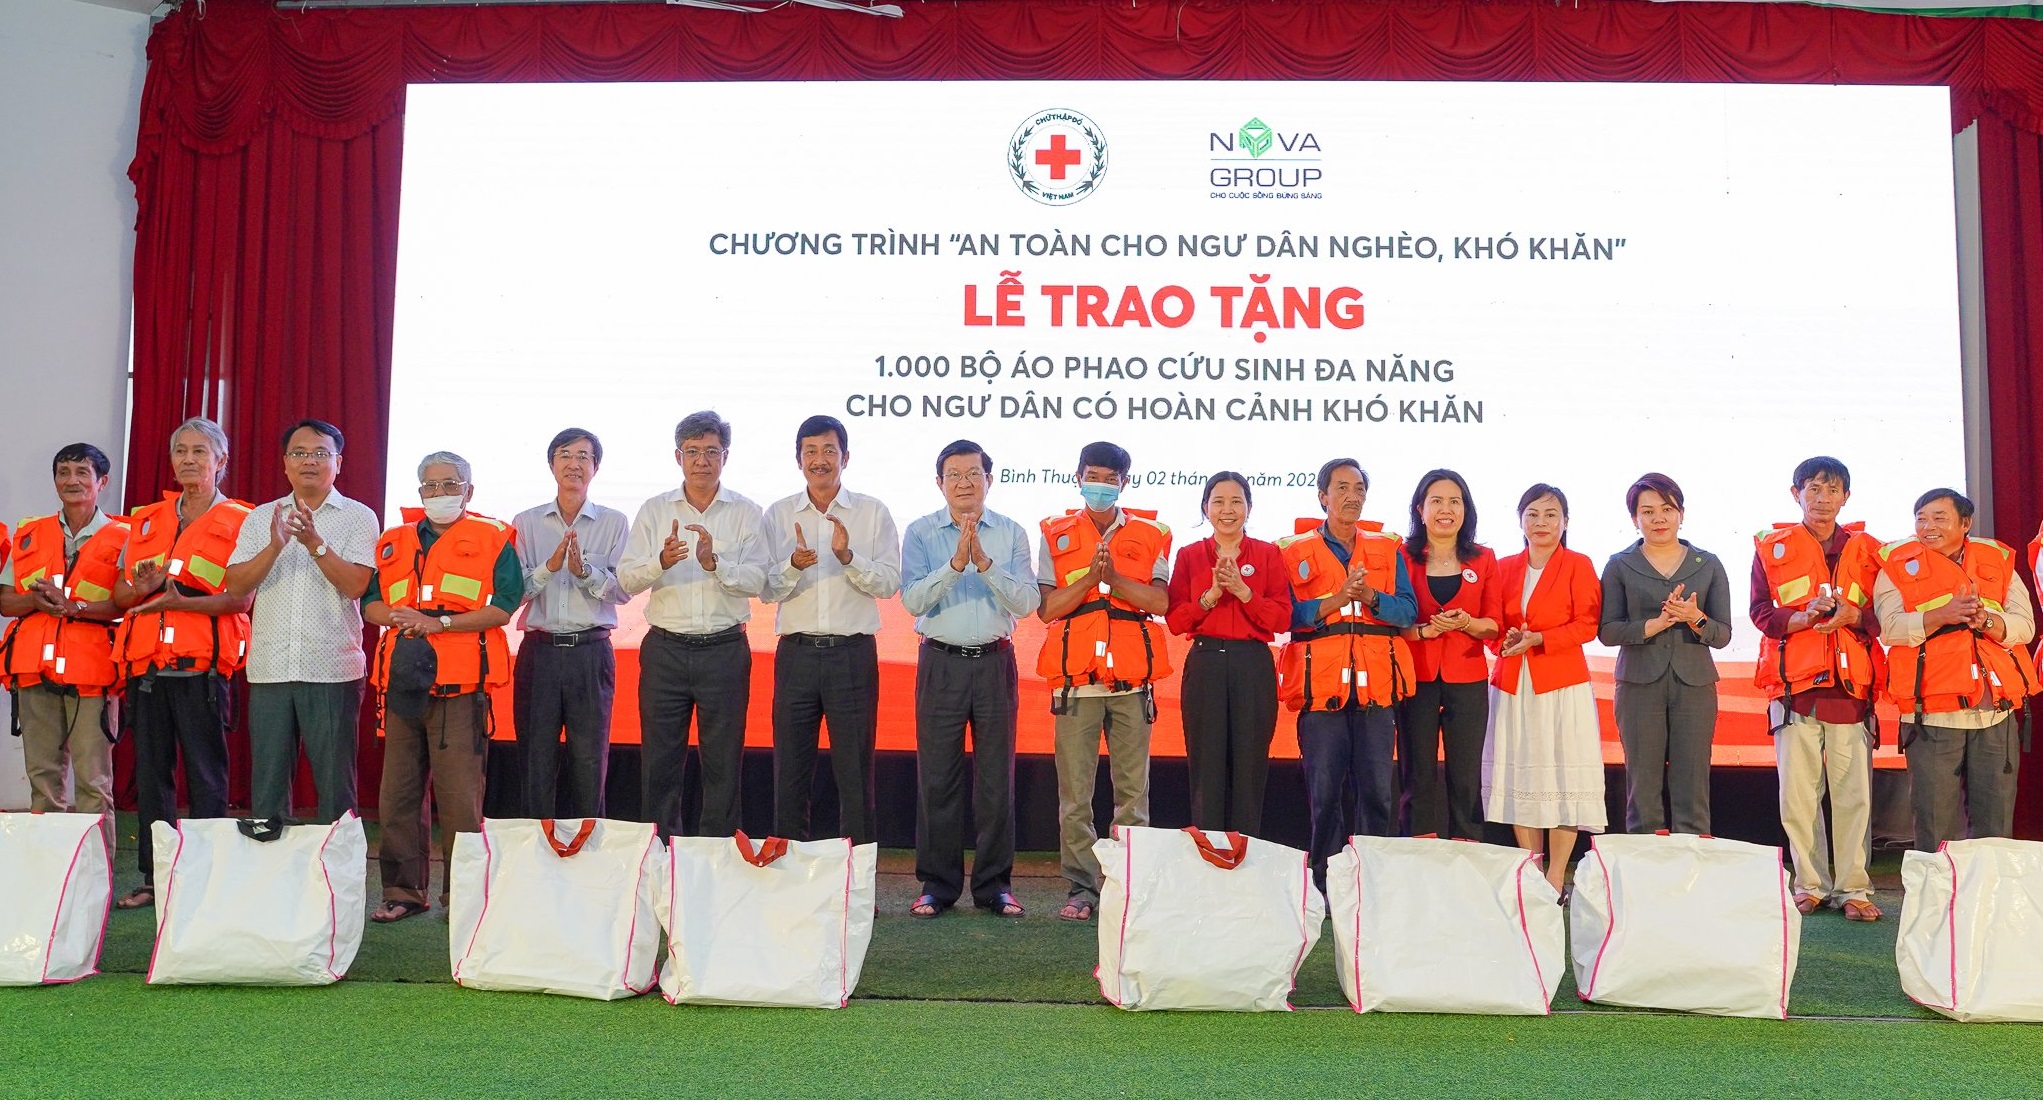 Nguyên Chủ tịch nước Trương Tấn Sang, đại diện TW Hội Chữ thập đỏ VN, lãnh đạo tỉnh Bình Thuận, Tập đoàn NovaGroup vui mừng khi trao tặng những món quà ý nghĩa tới ngư dân nghèo Bình Thuận